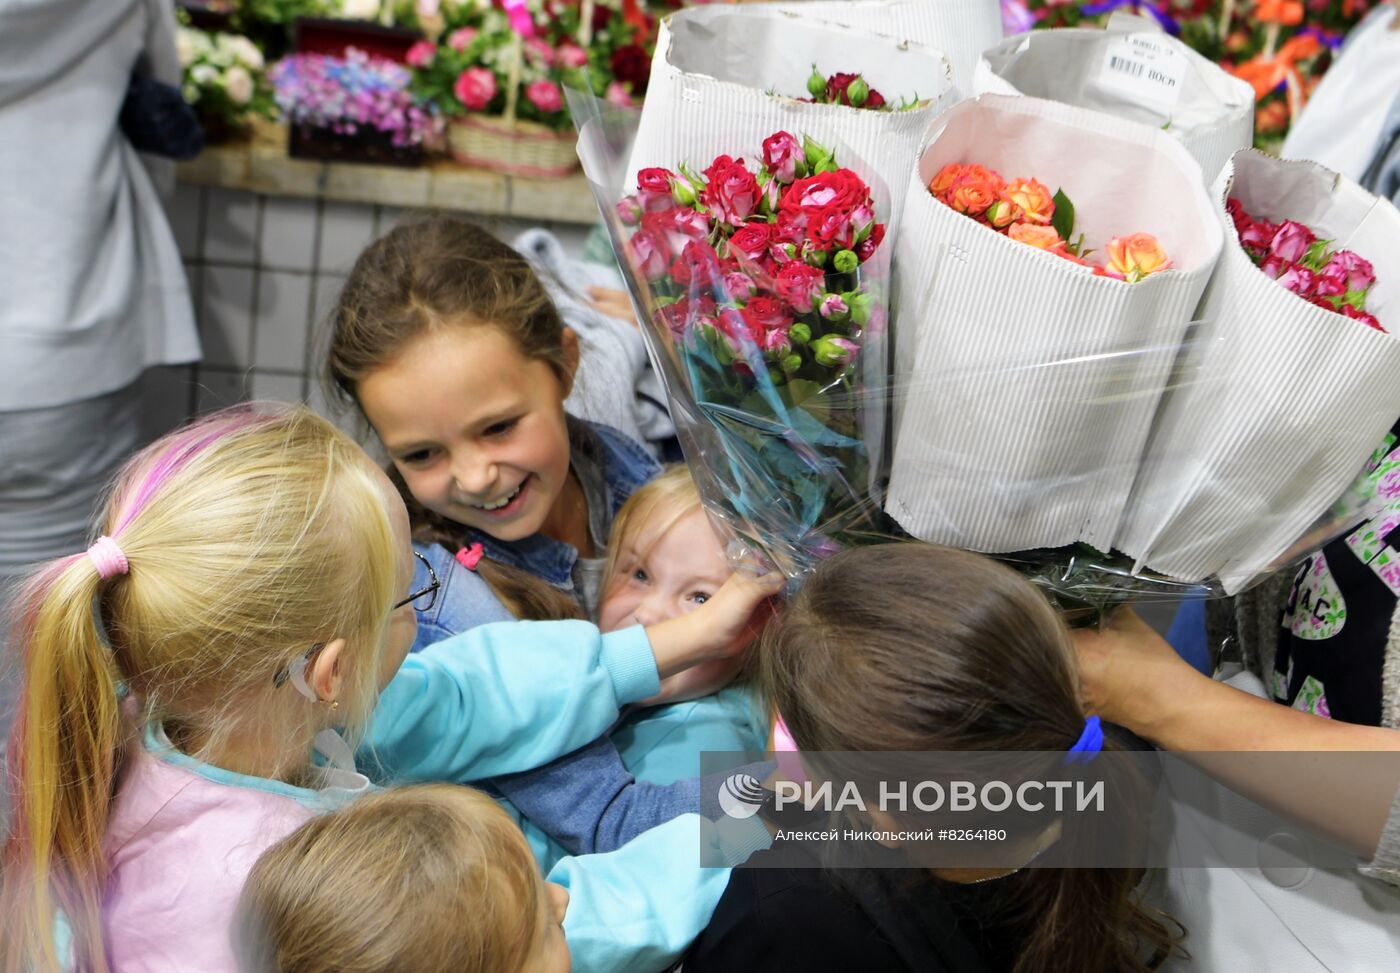 Продажа цветов накануне 1 сентября в Москве